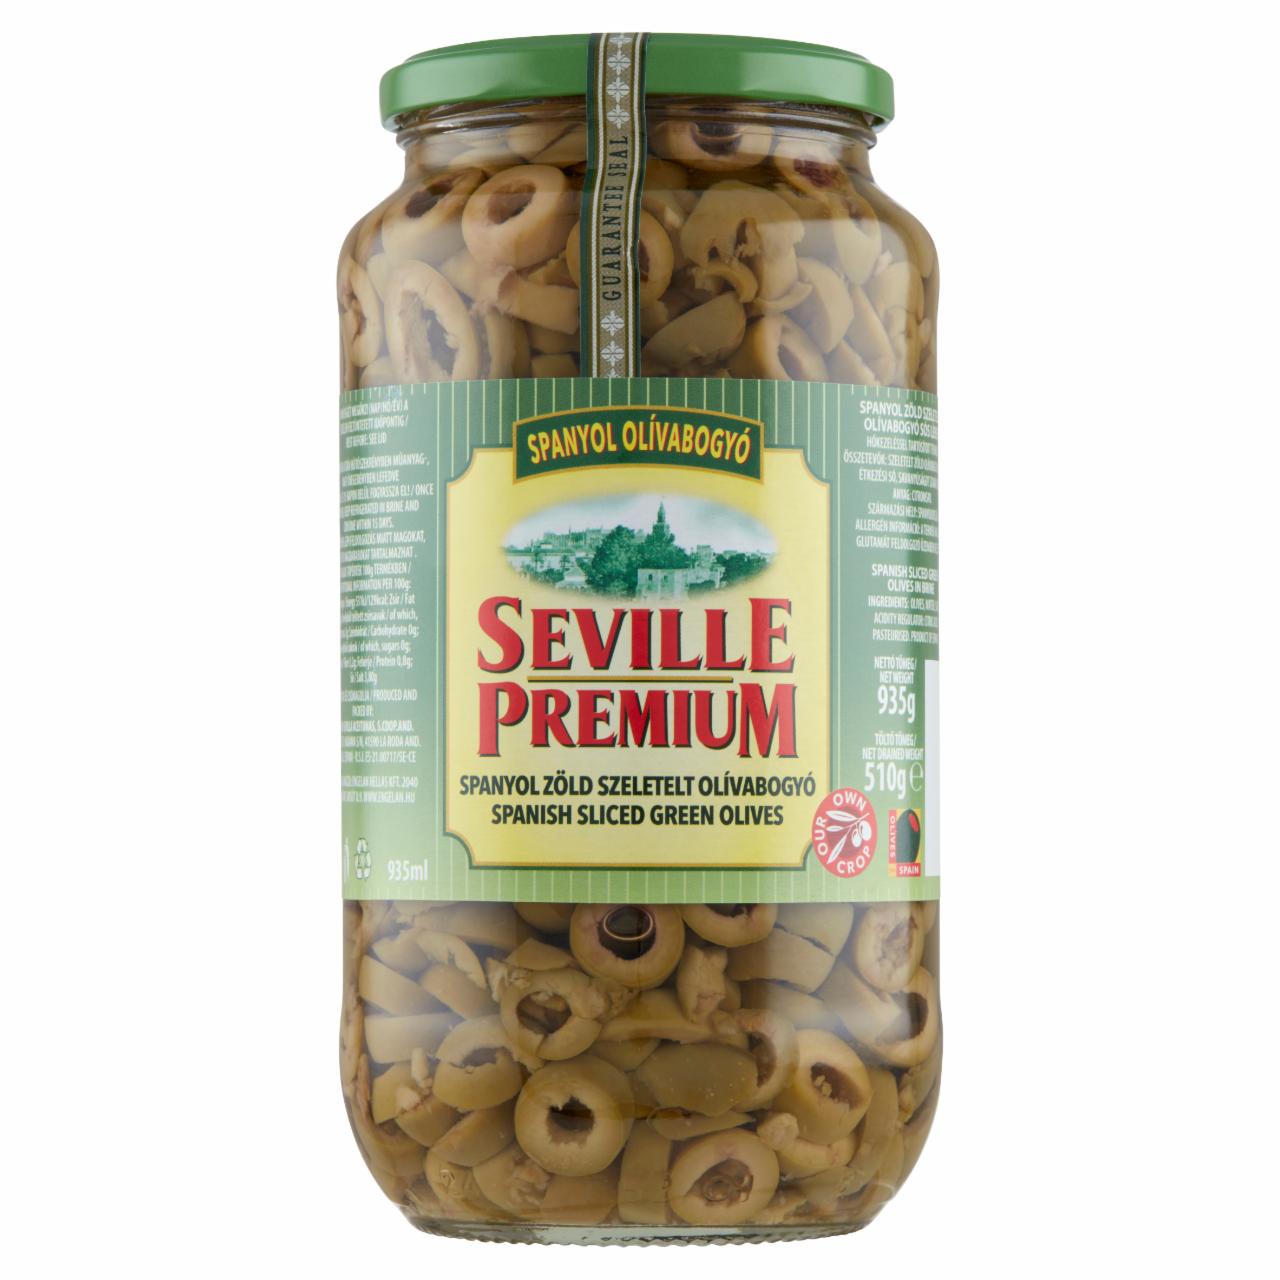 Képek - Seville Premium spanyol zöld szeletelt olívabogyó sós lében 935 g